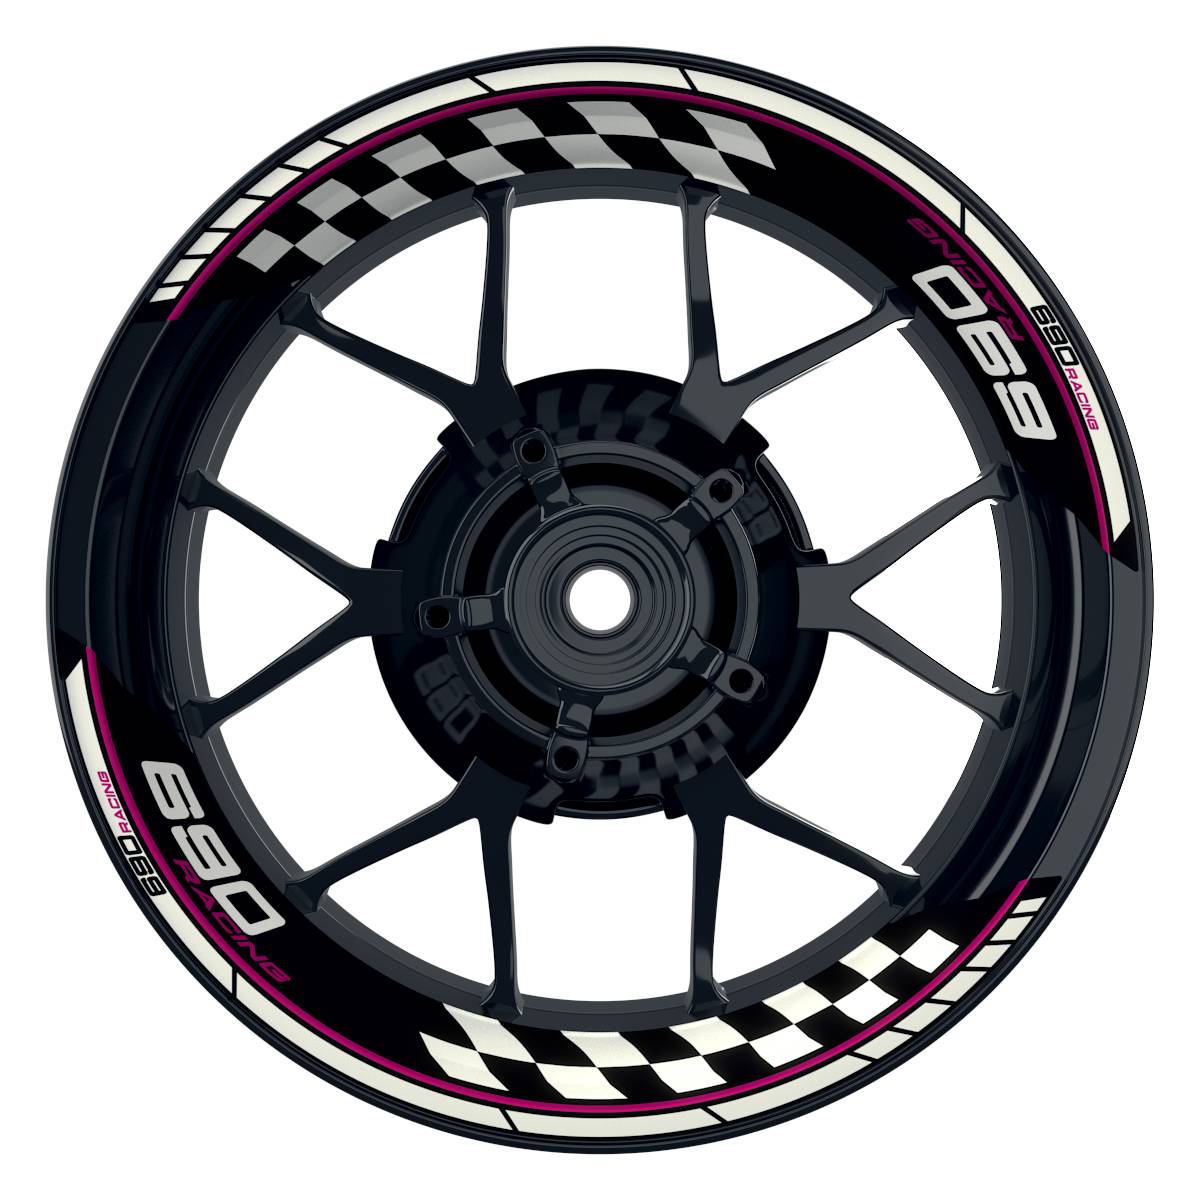 KTM Racing 690 Grid schwarz pink Frontansicht